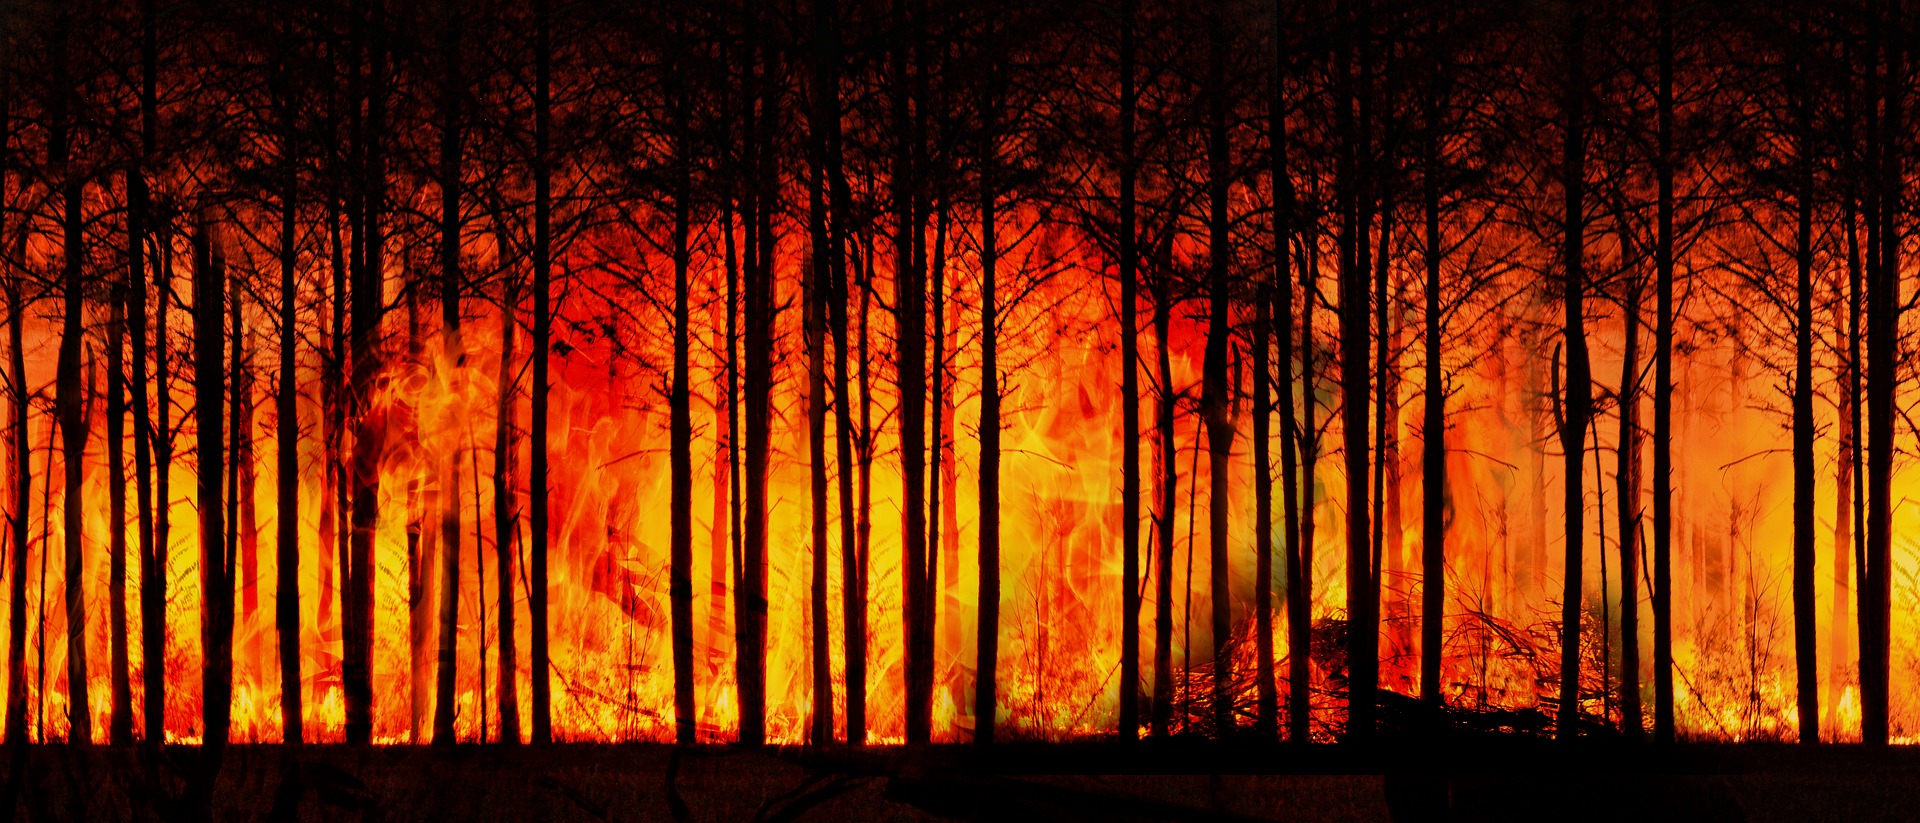 2022 was ook het recordjaar van het aantal bosbranden in de zomer. Vooral de brandweer in Slovenië en Spanje waren druk.